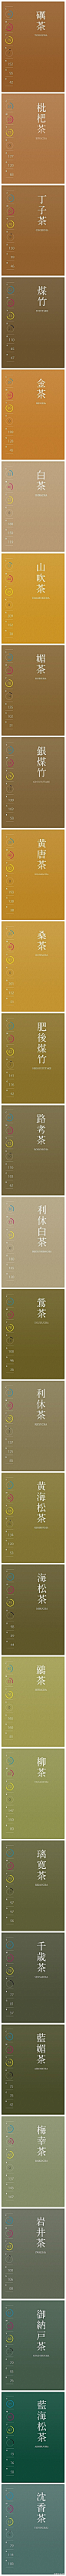 给大家分享一组炒鸡棒的传统文艺配色。这些颜色常被日本设计师用于传统的艺术设计和手工艺设计中。图谱一共包含了两百五十种配色效果，且每个颜色都附加RGB色值。必收的配色精品，转给需要的小伙伴们吧！| net